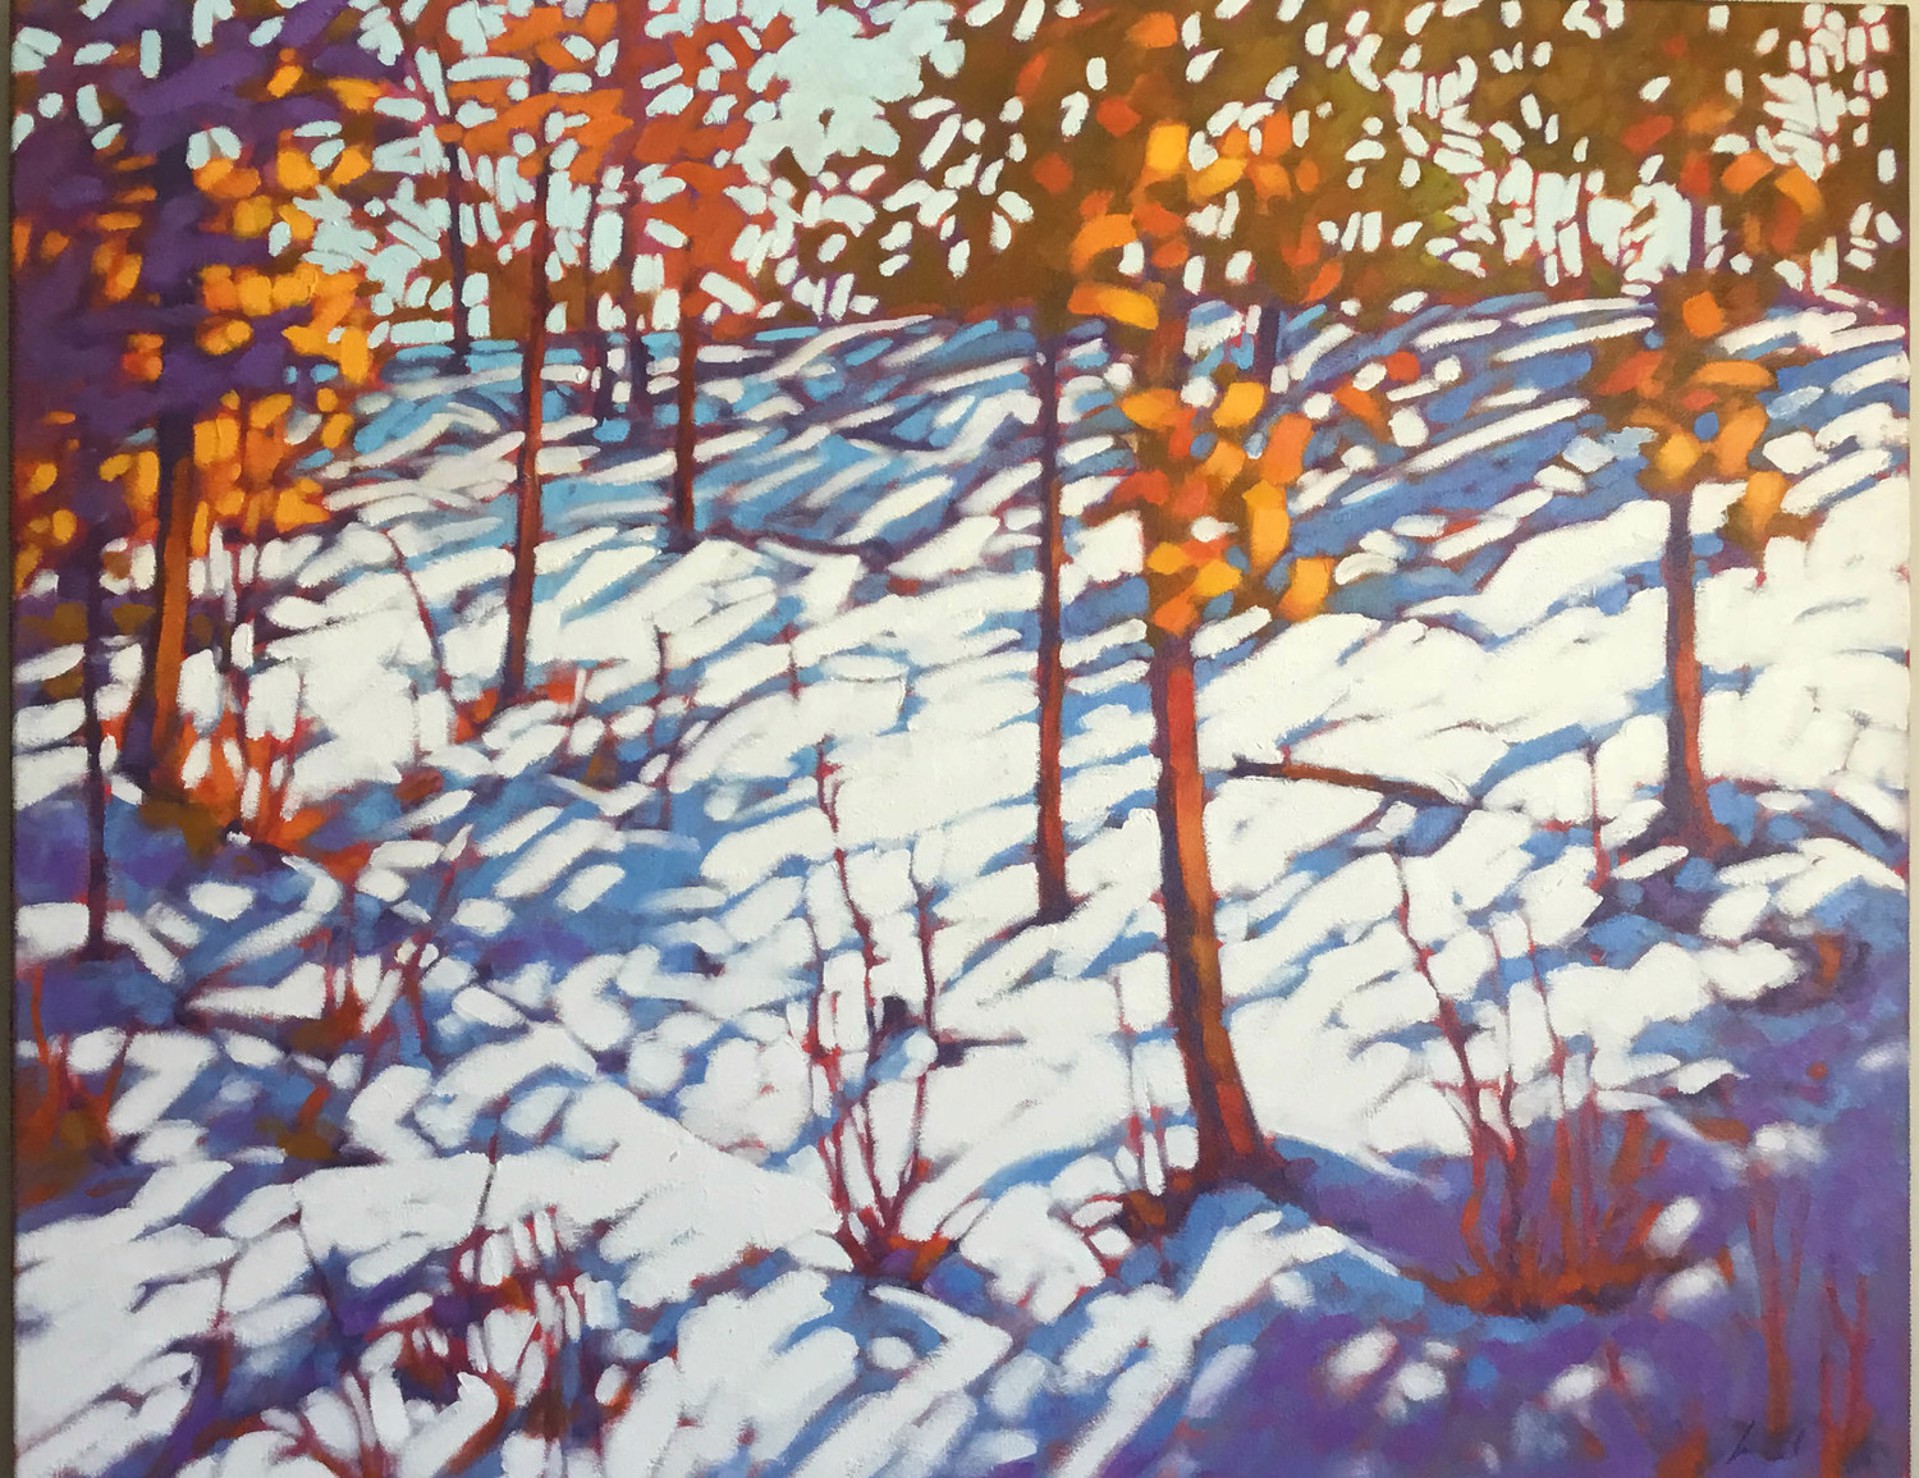 Hillside and Snow by John Lennard